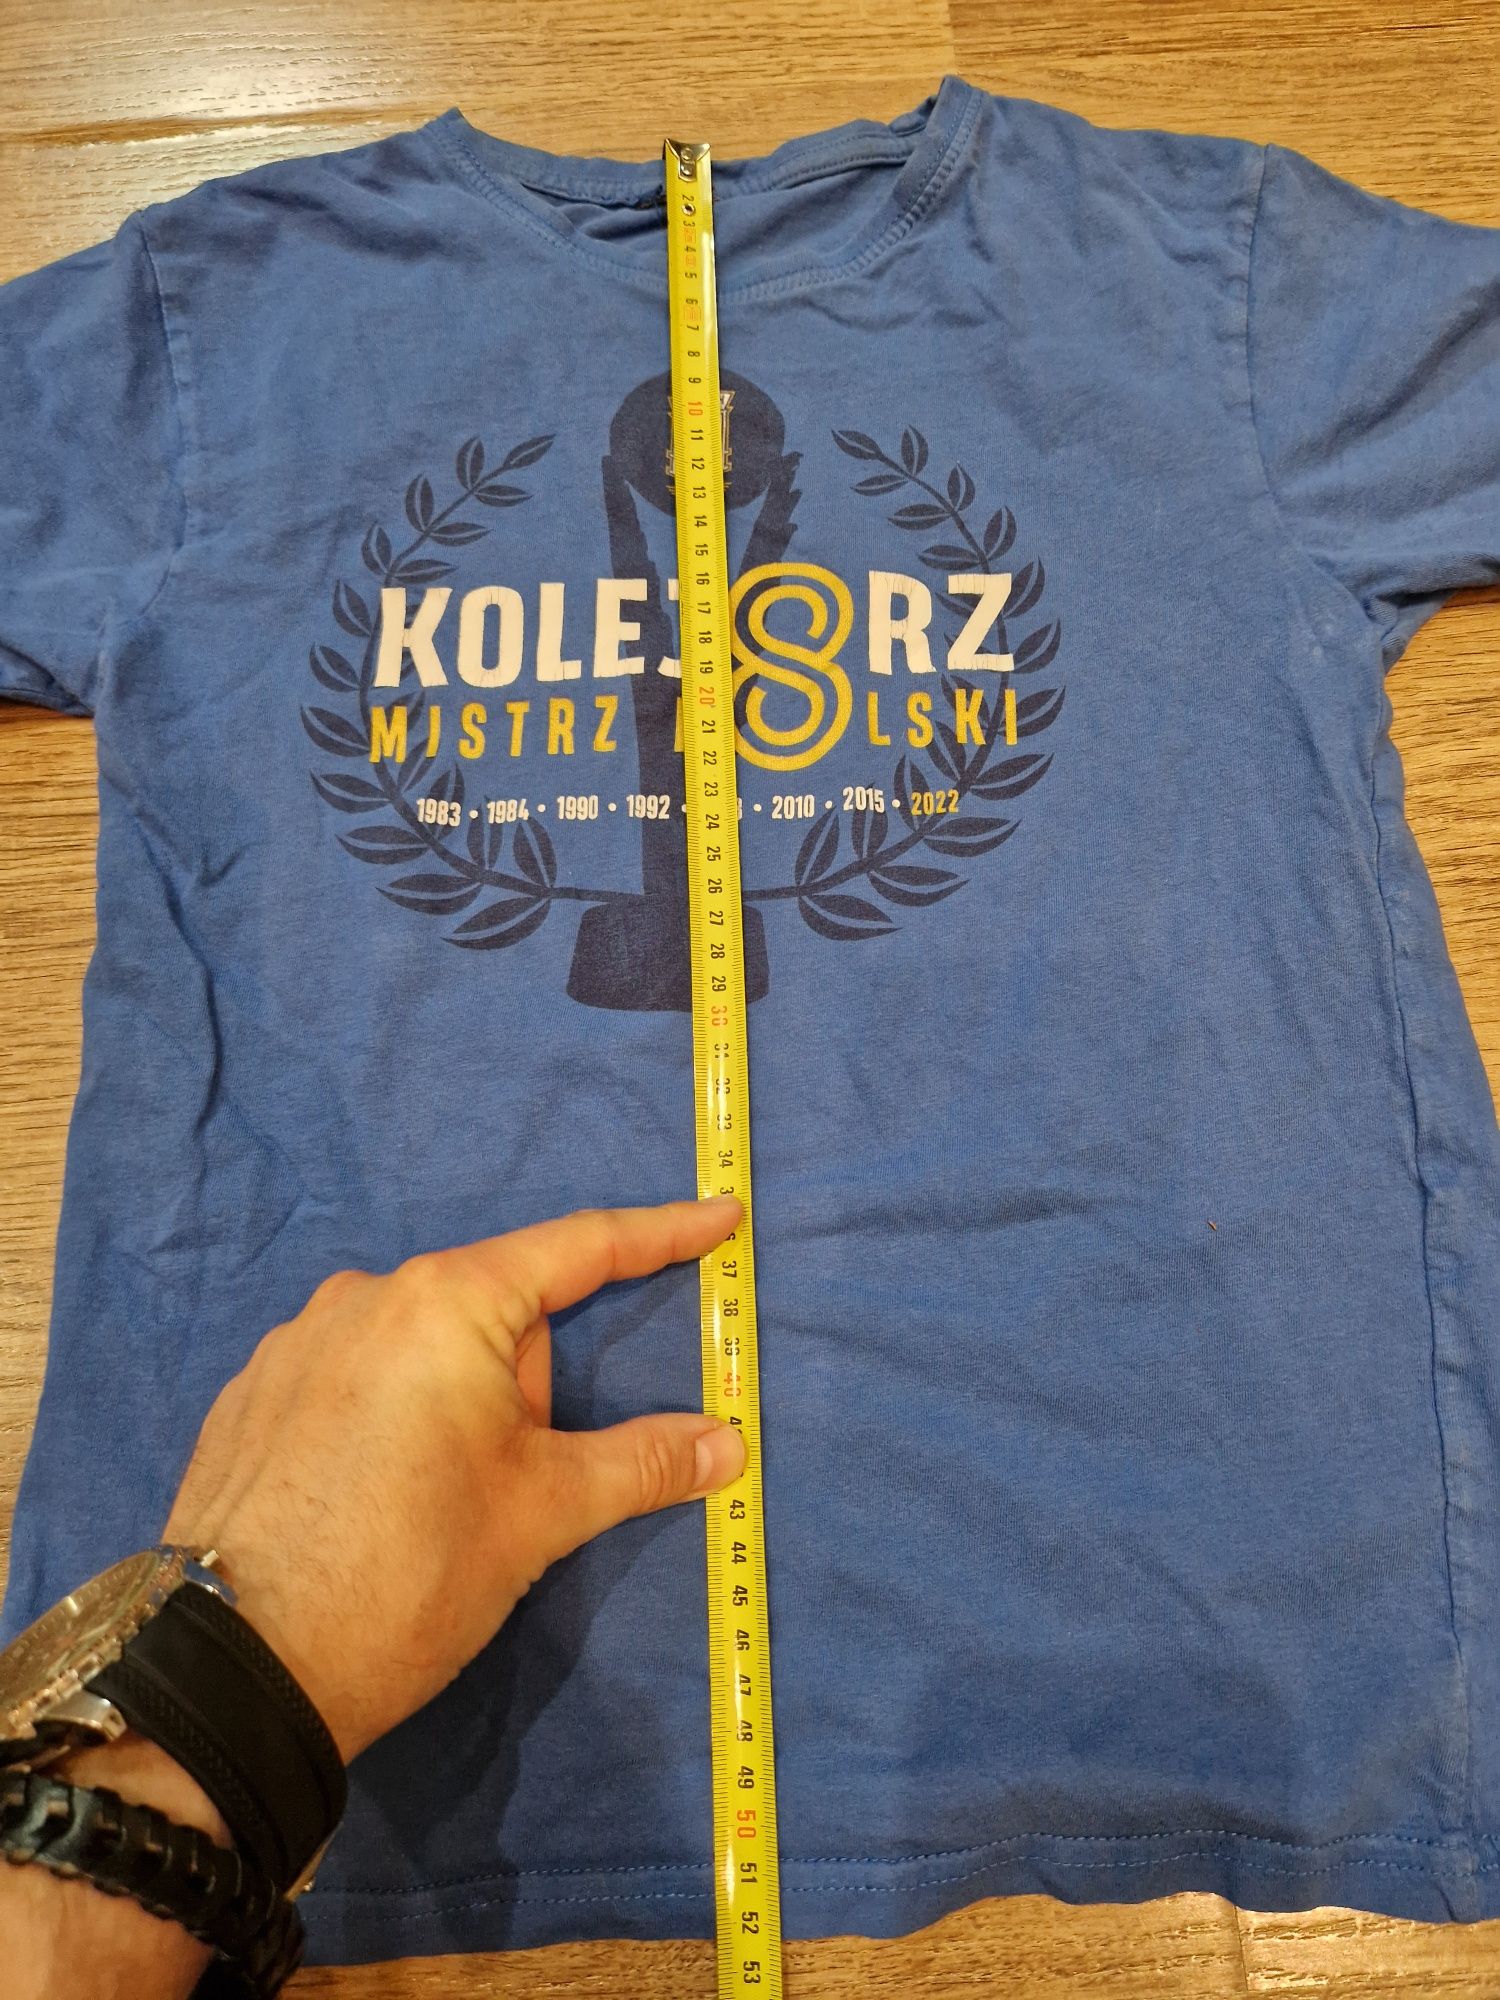 Koszulka lech poznań, t-shirt 146. Mistrz Polski